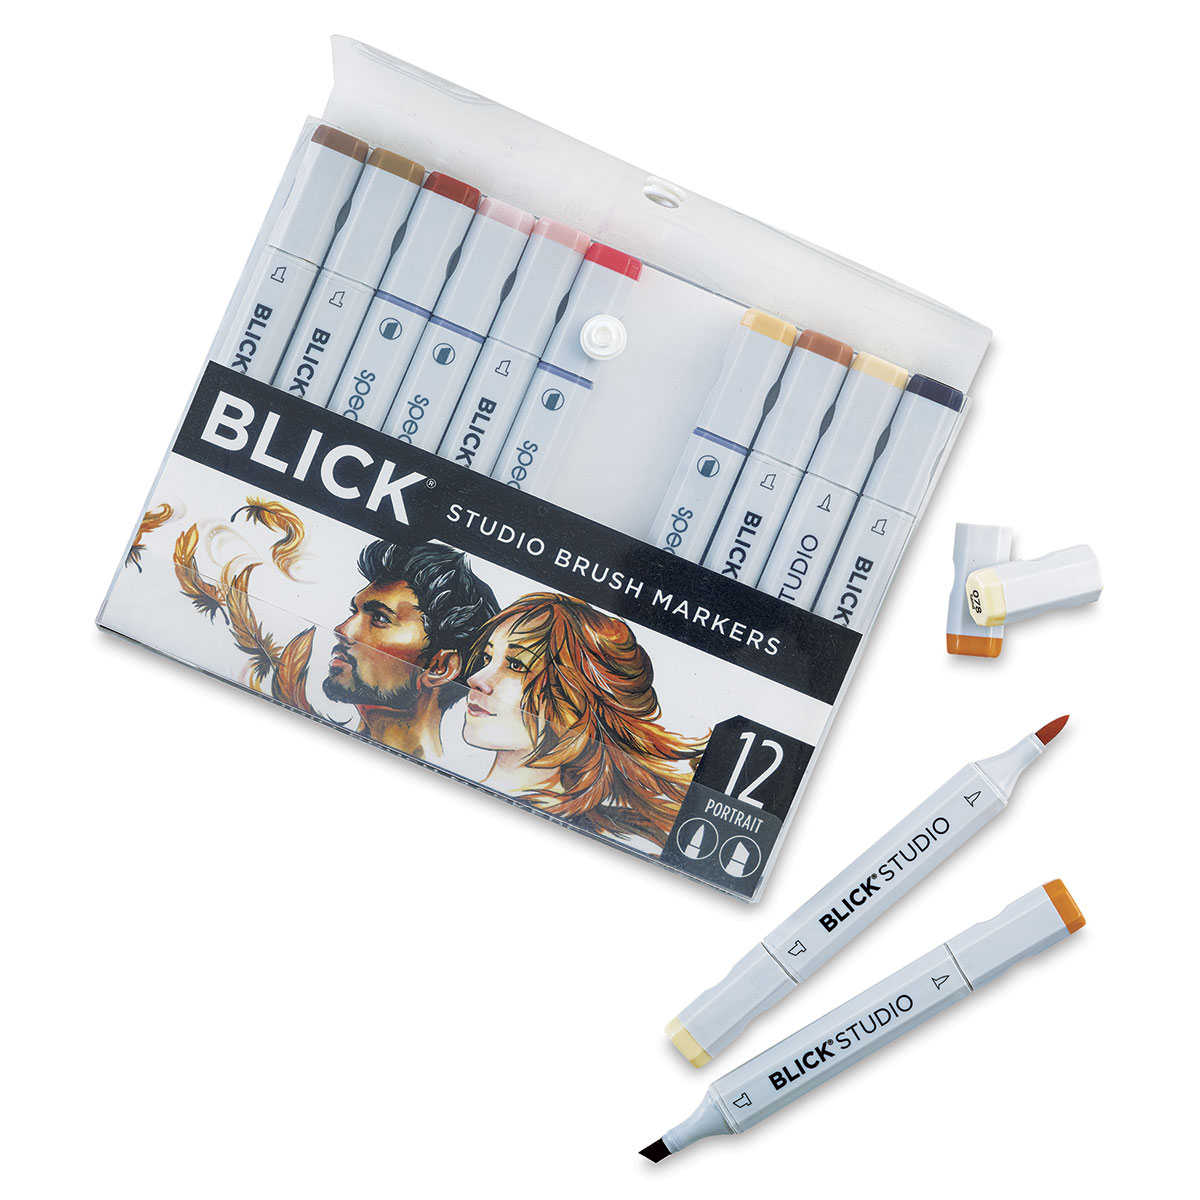 Kingart Dual Tip Brush Pen Set - Set of 96